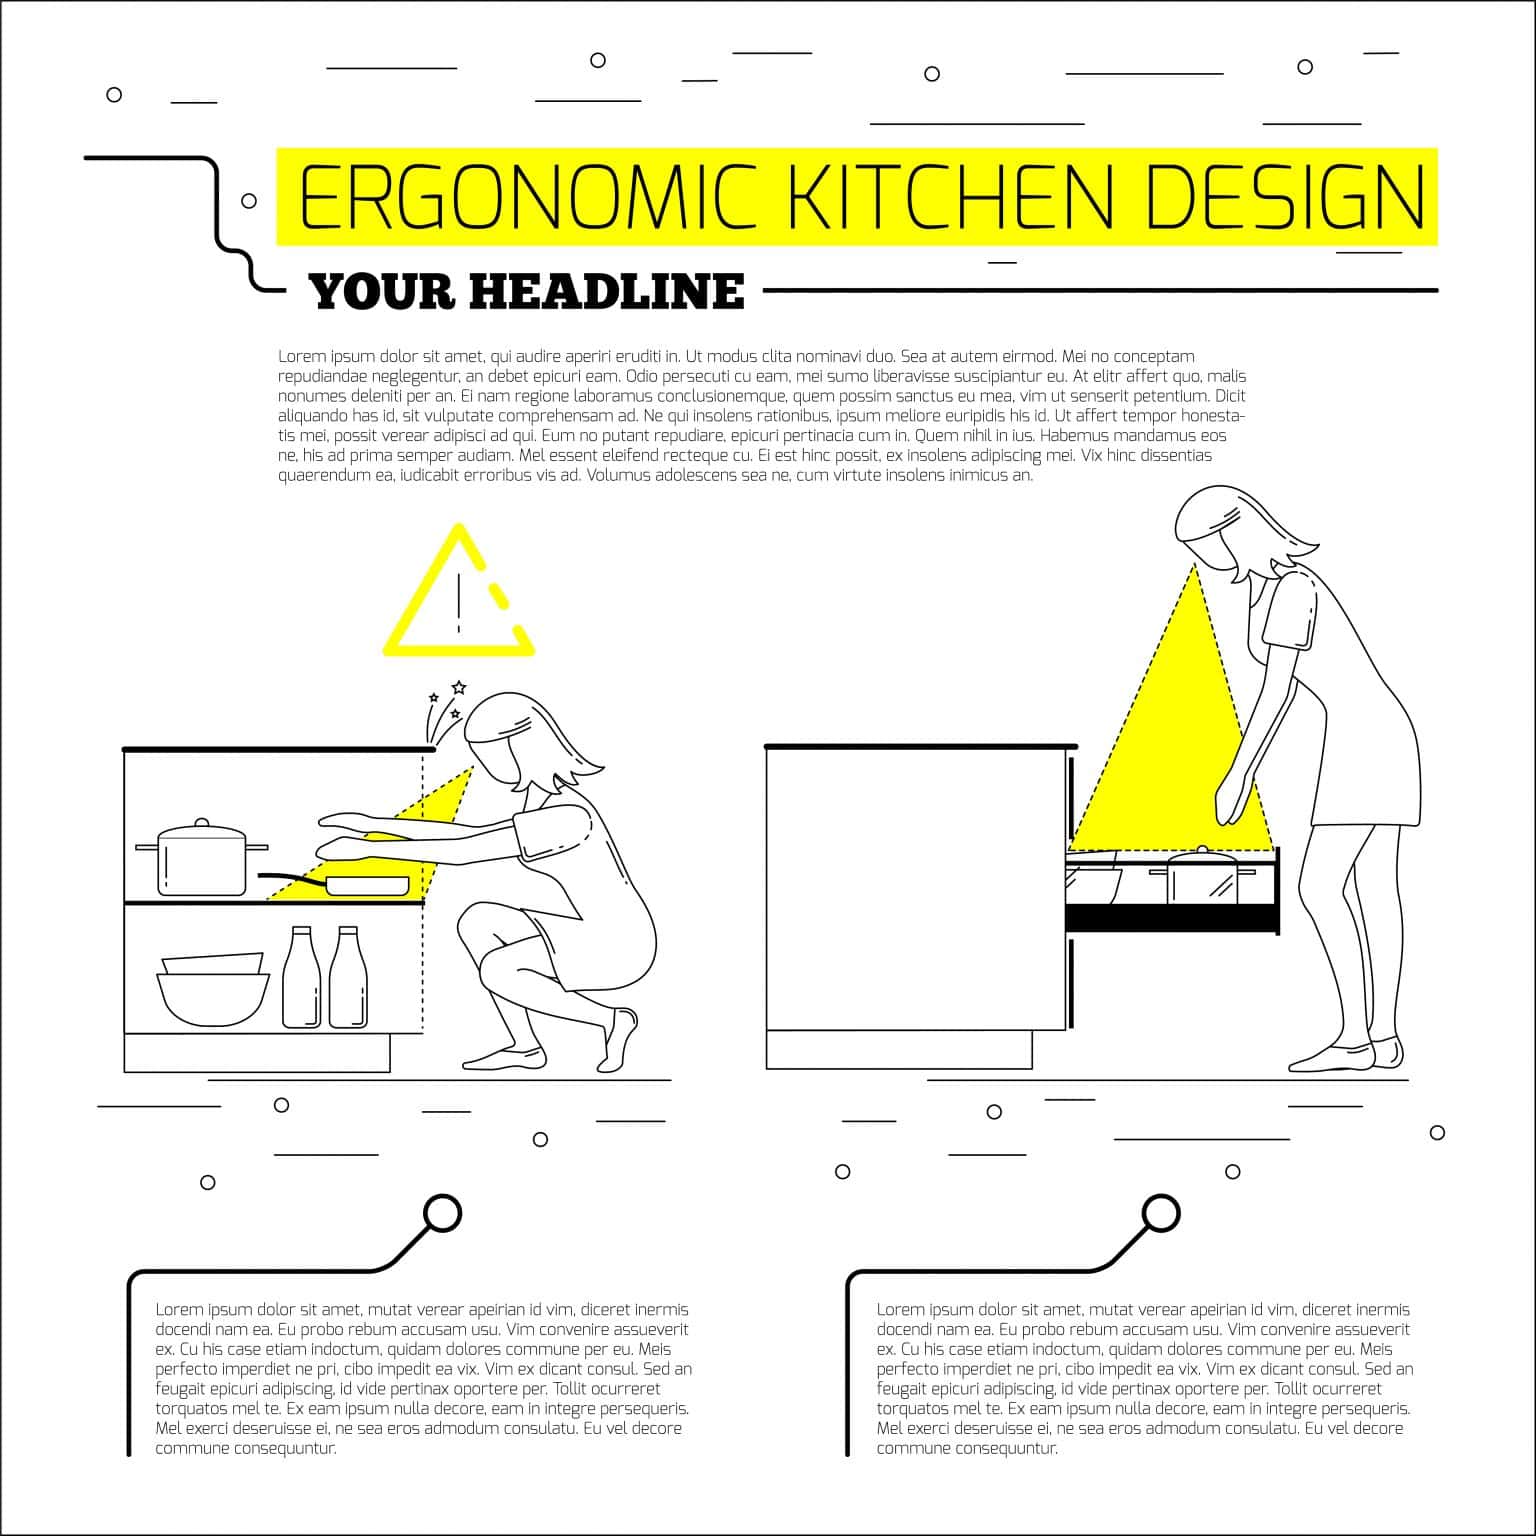 Smart Tips for Ergonomic Kitchen Design - HomeLane Blog